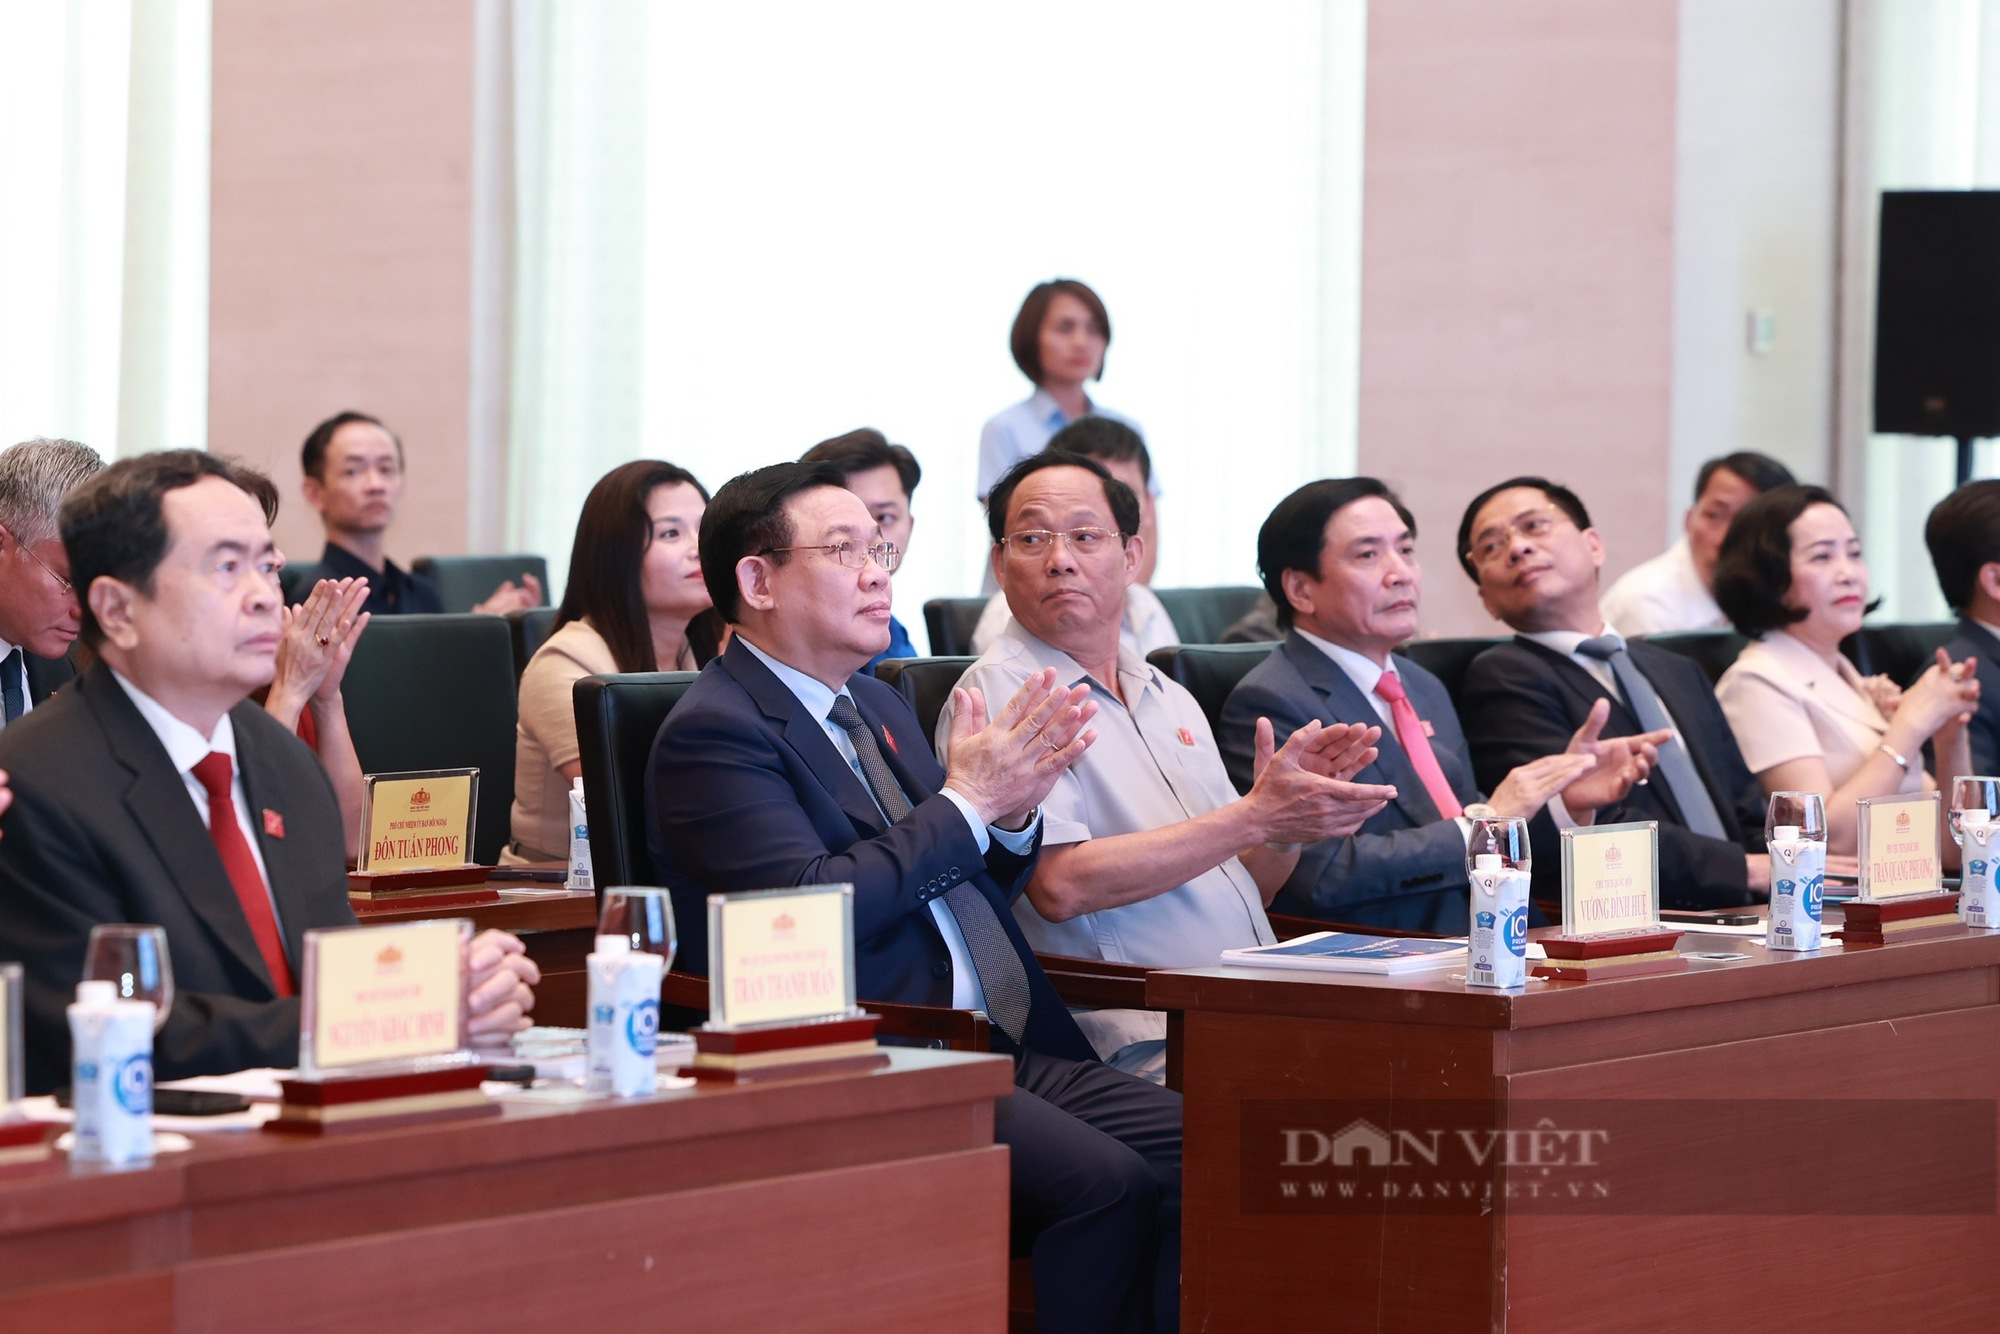 3 nội dung hấp dẫn tại Hội nghị Nghị sĩ trẻ toàn cầu lần thứ 9 do Việt Nam đăng cai tổ chức - Ảnh 1.